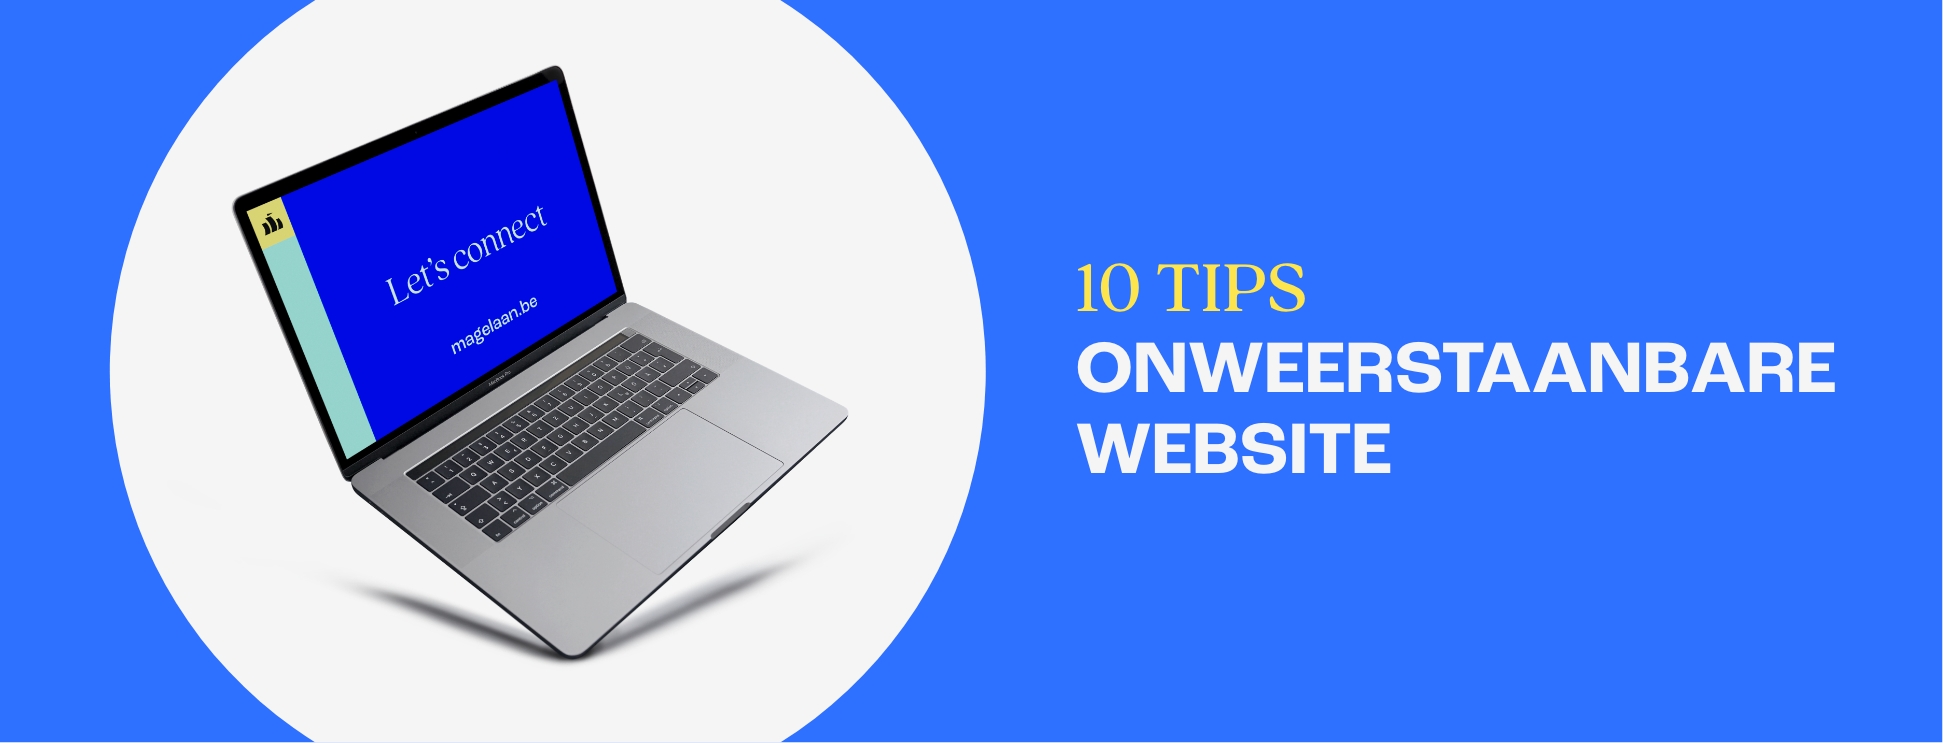 10 tips voor een onweerstaanbare website